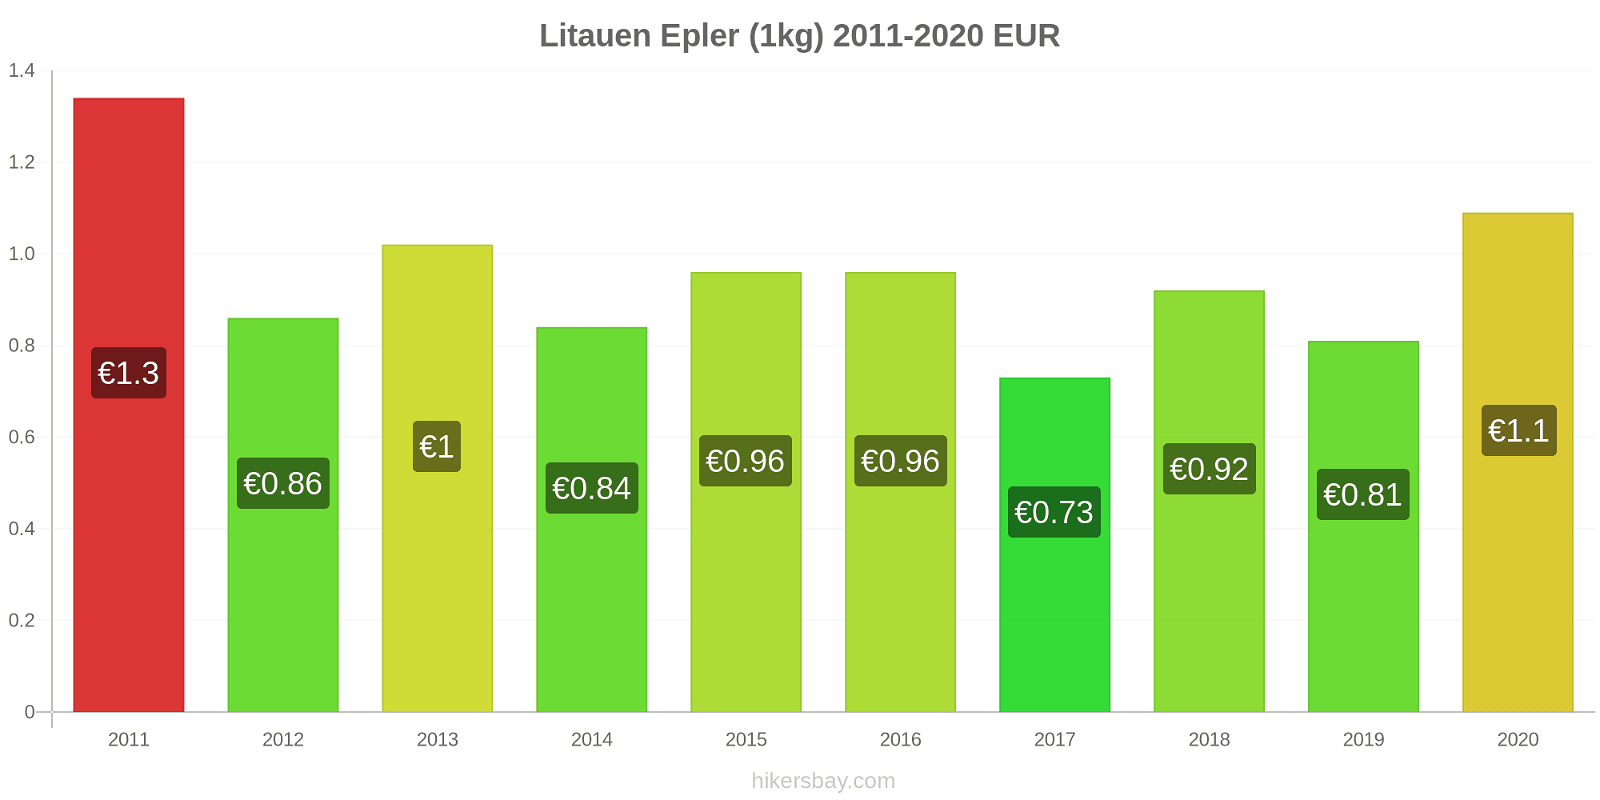 Litauen prisendringer Epler (1kg) hikersbay.com